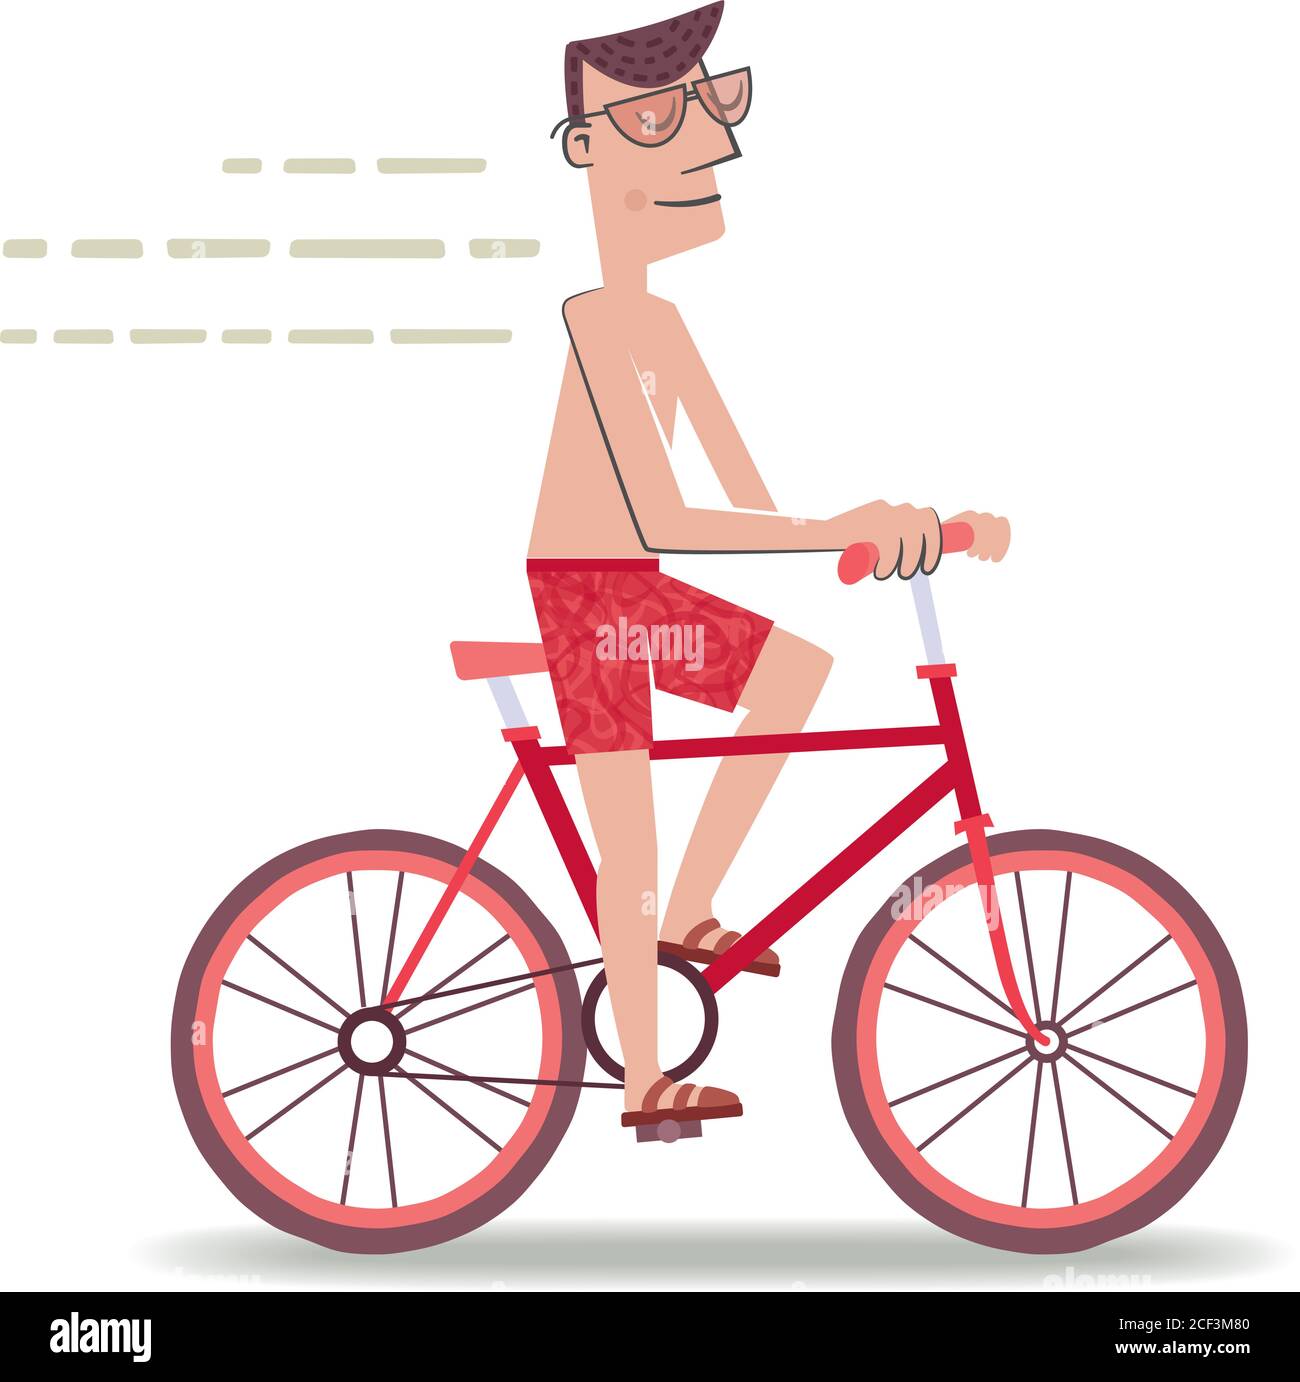 Illustration de style rétro d'un homme à vélo allant à la plage en maillot de bain. Illustration de Vecteur